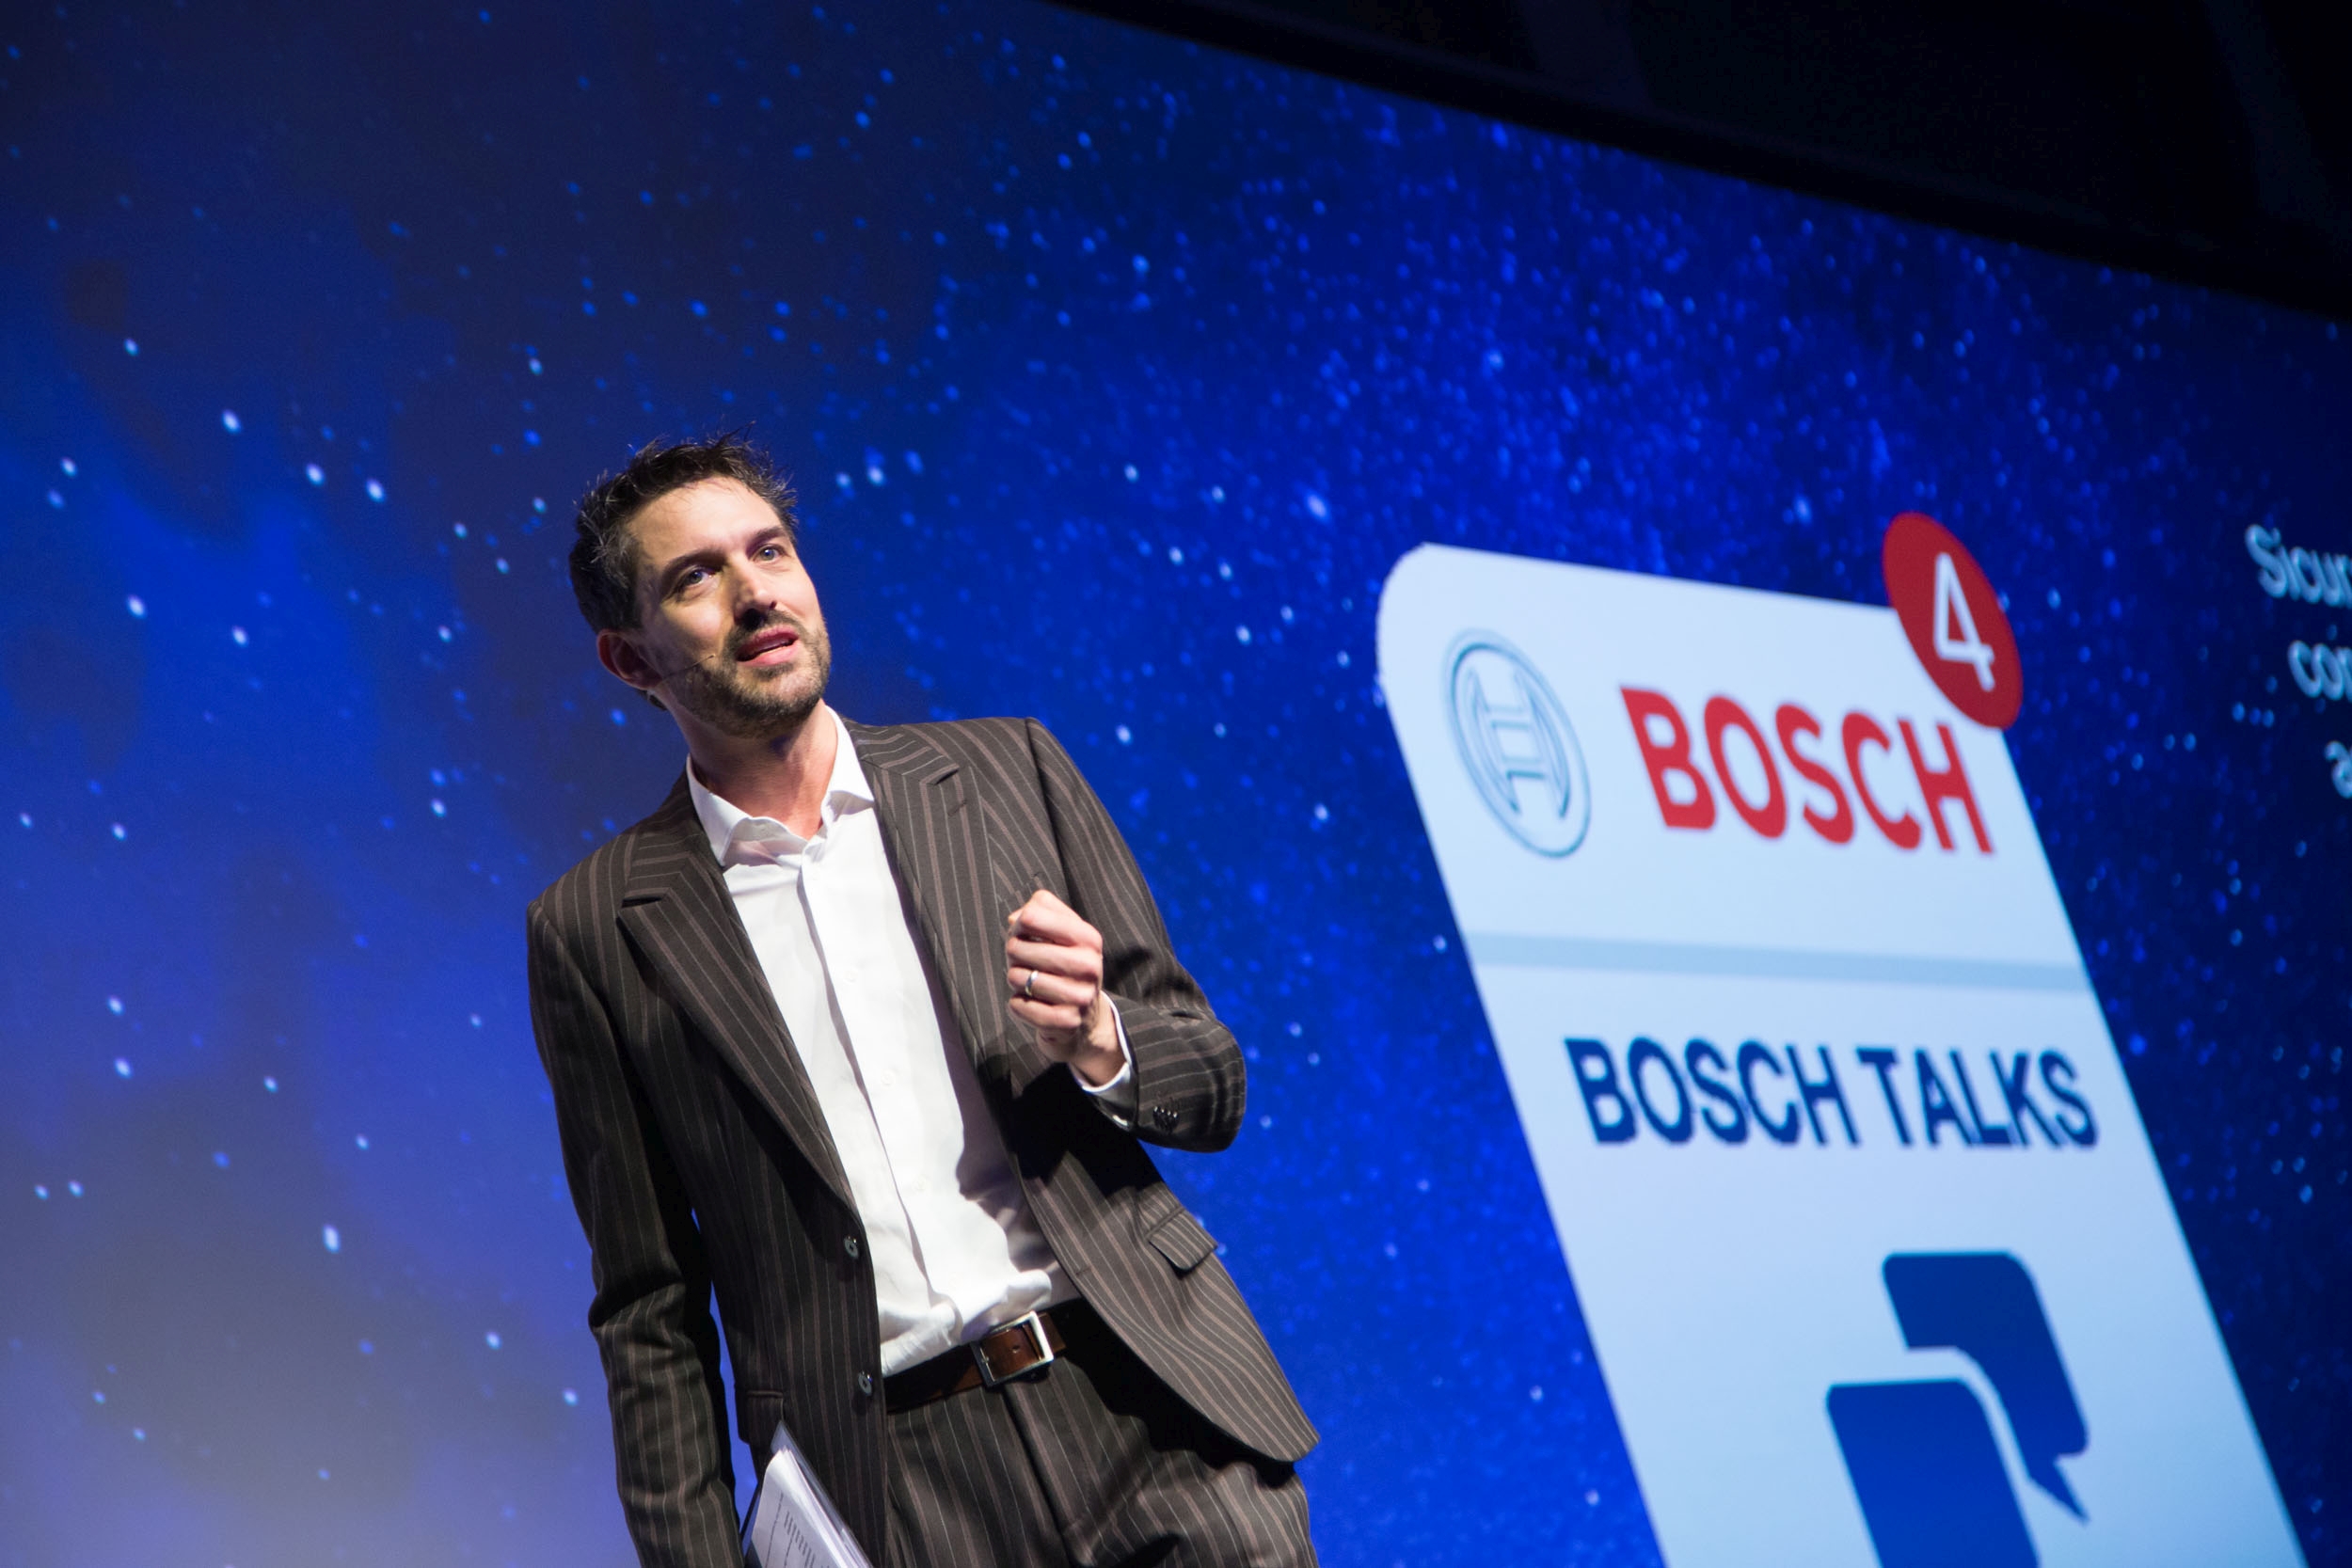 Bosch Car Service: il futuro delle officine è digitale